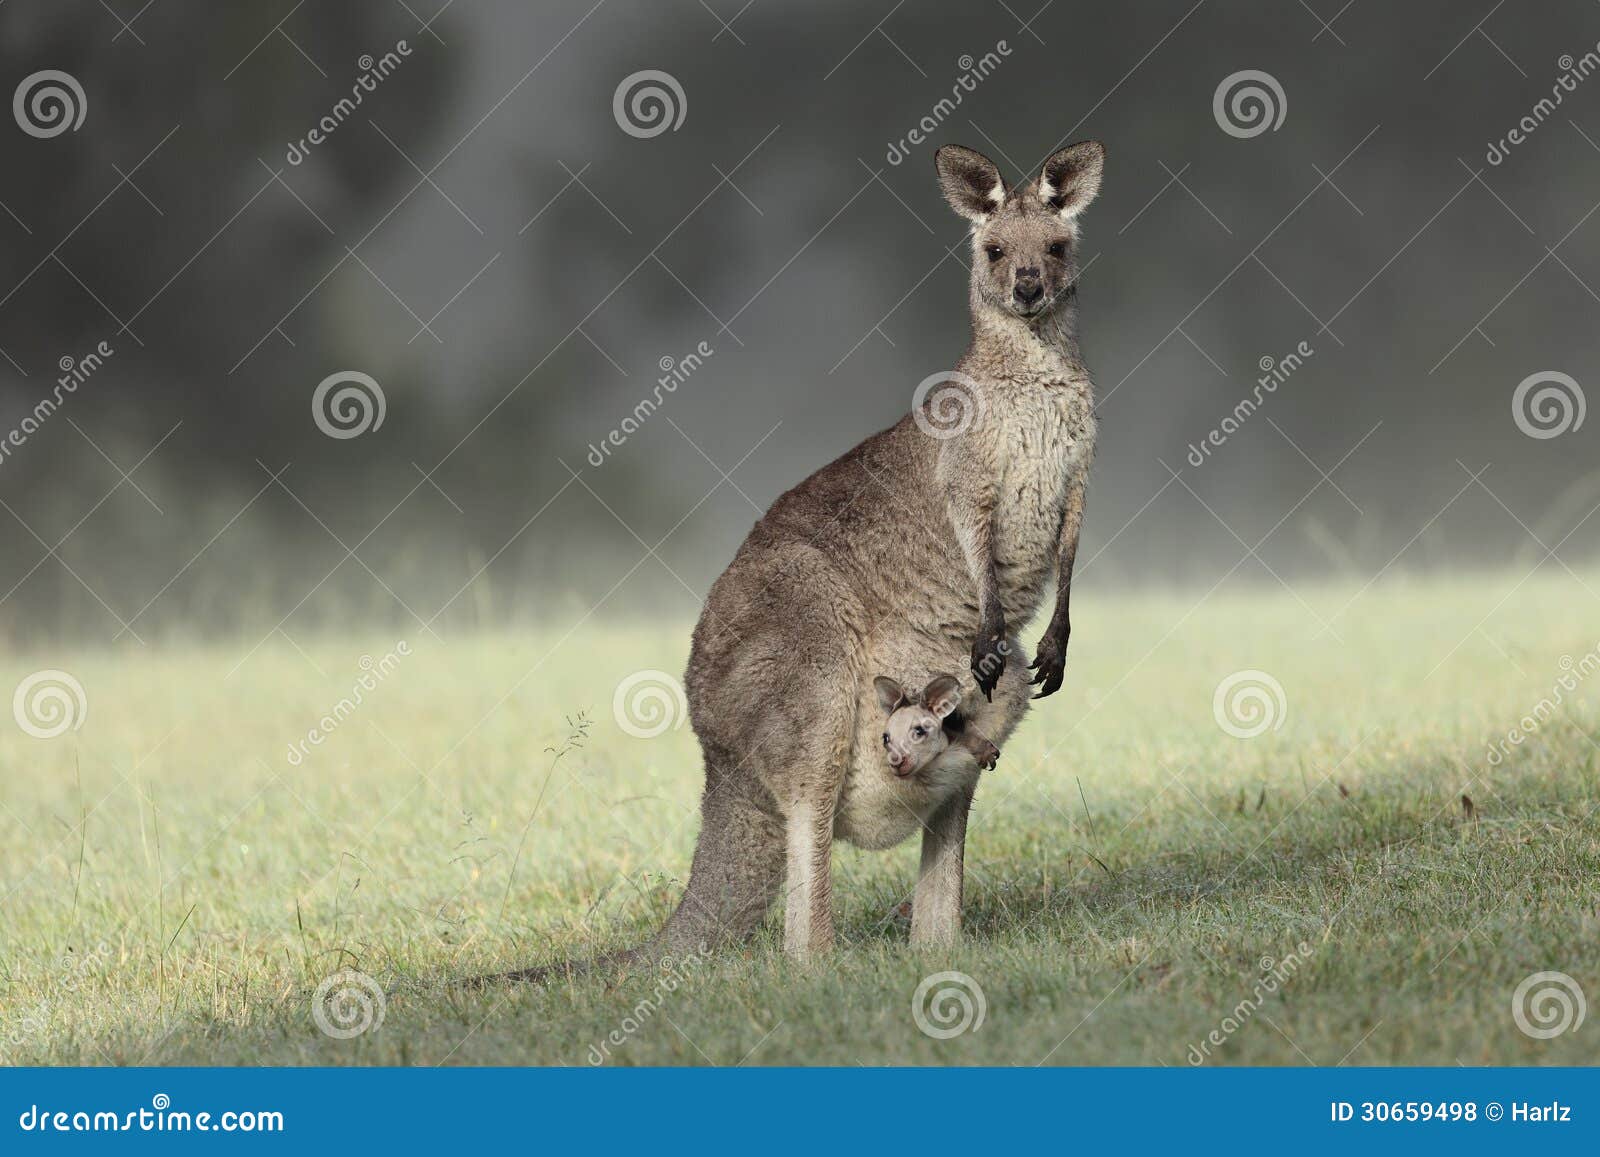 eastern grey kangaroo with joey